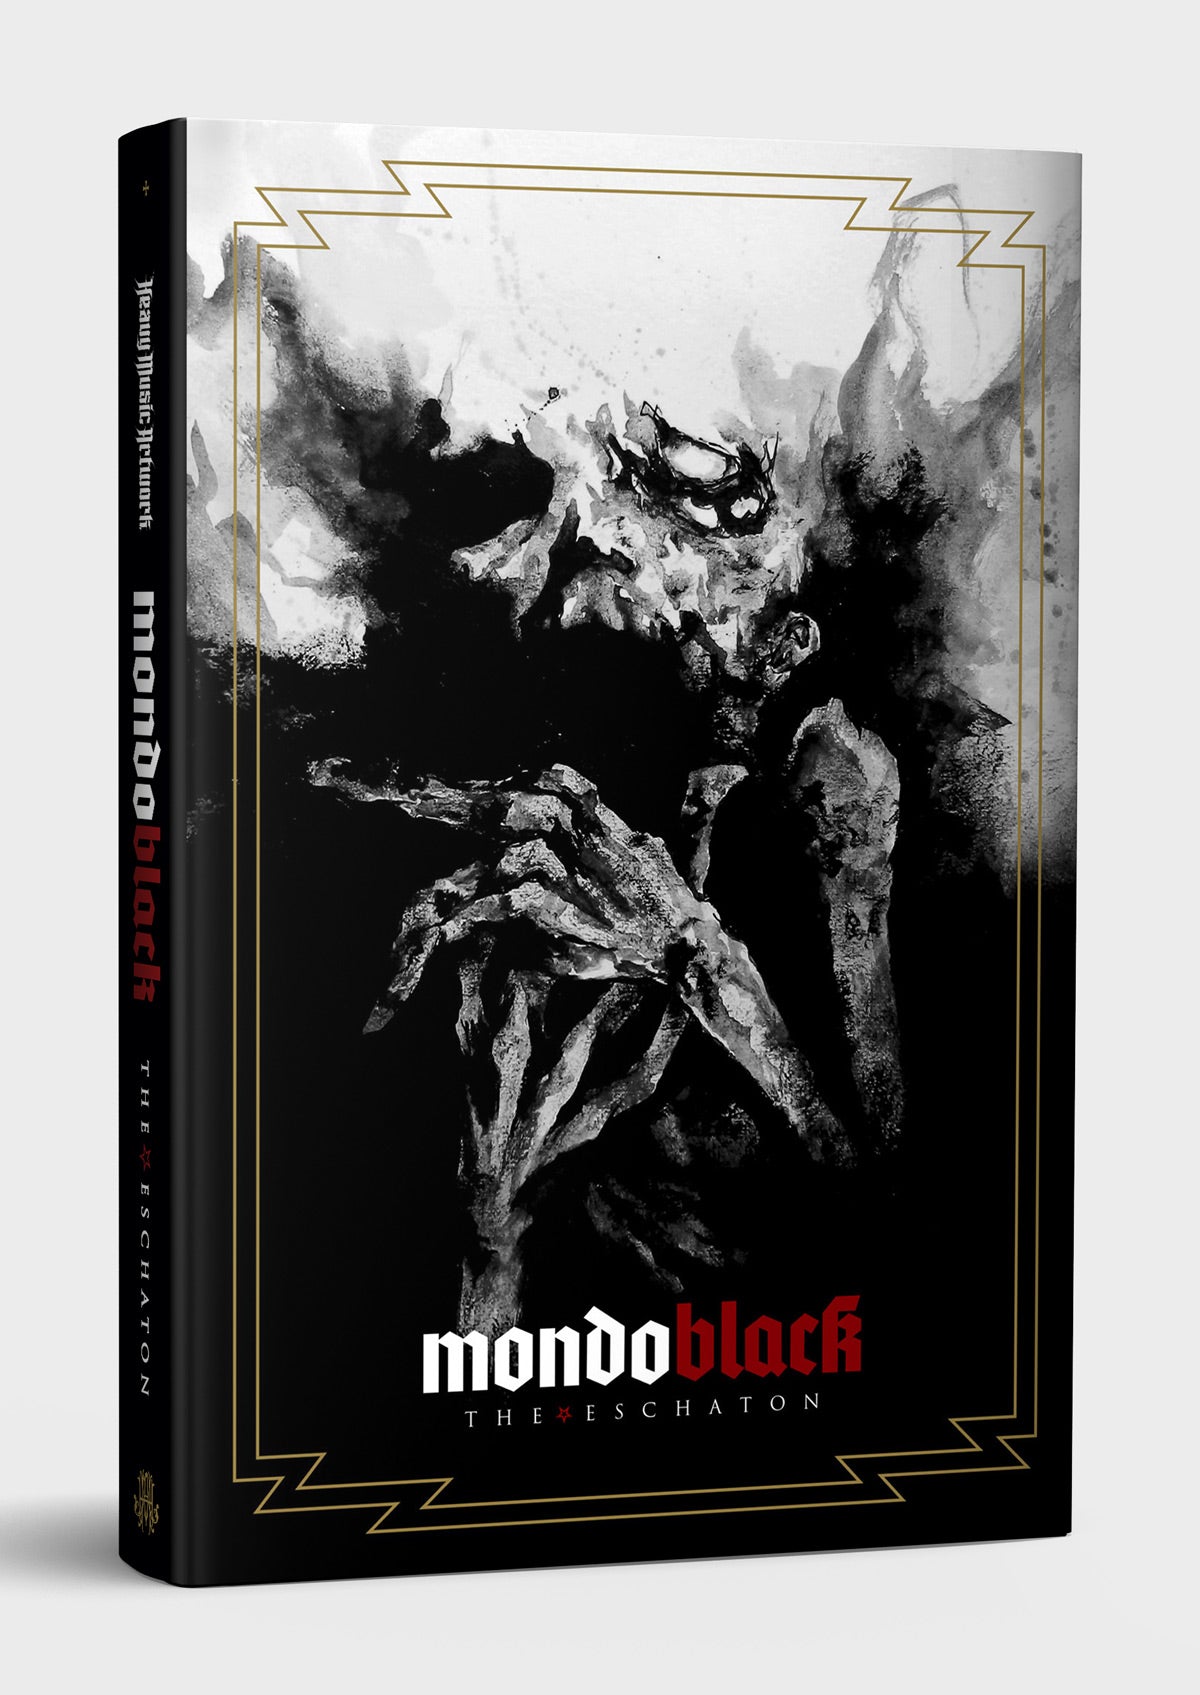 Mondo Black, The Eschaton